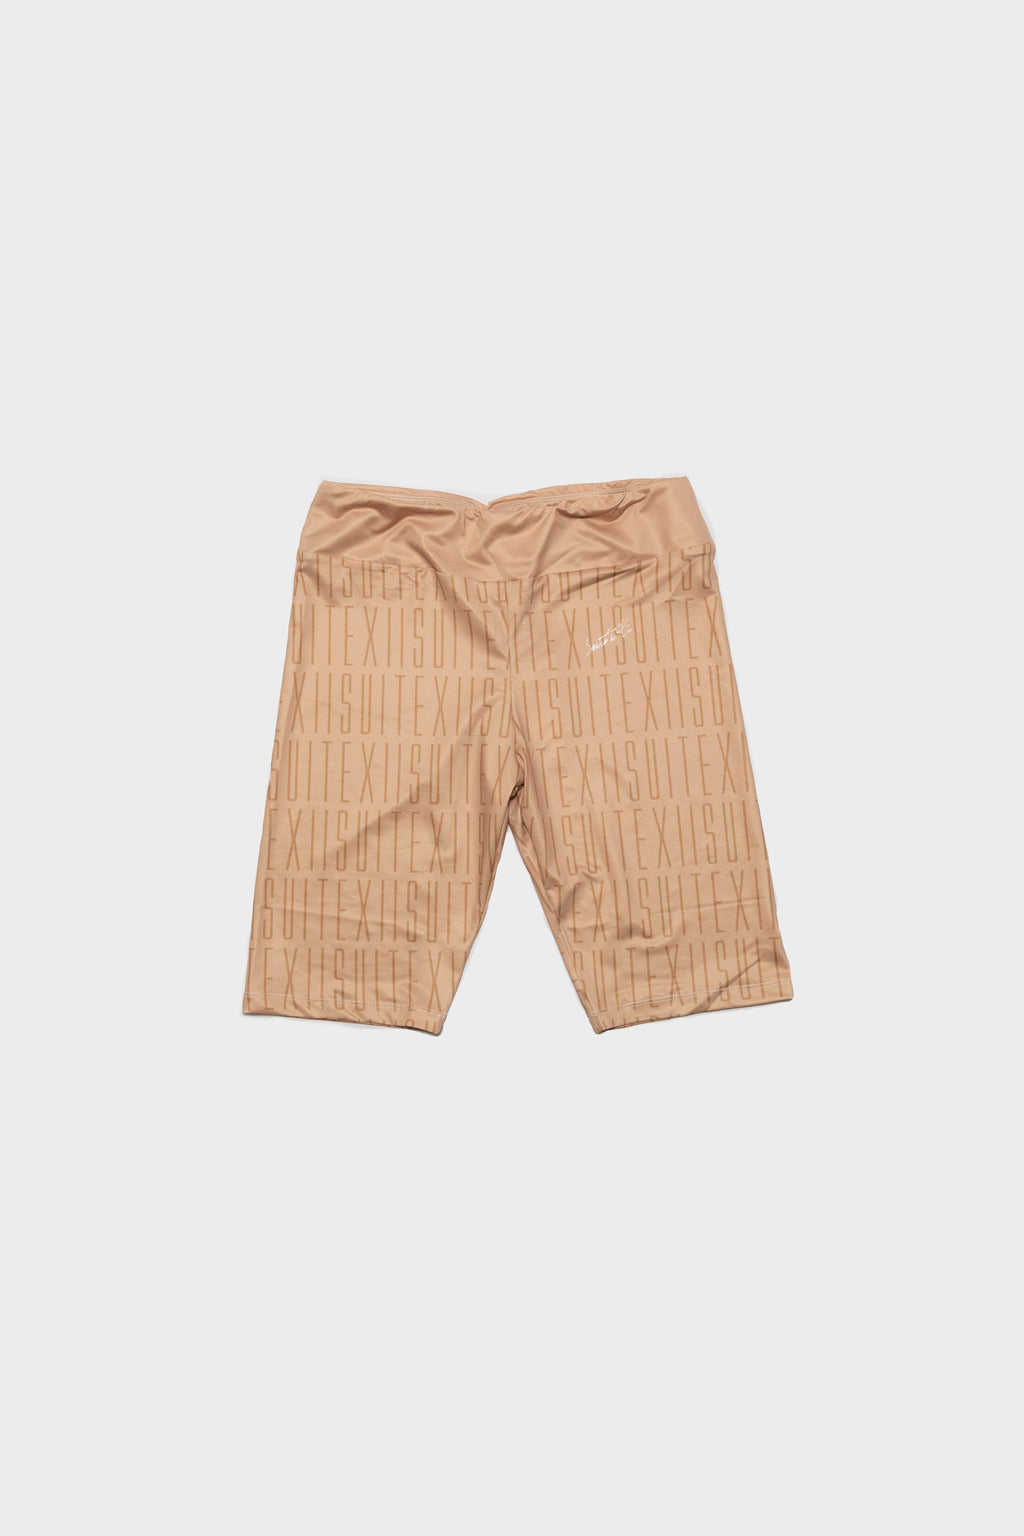 Sarto Biker Shorts - Tan